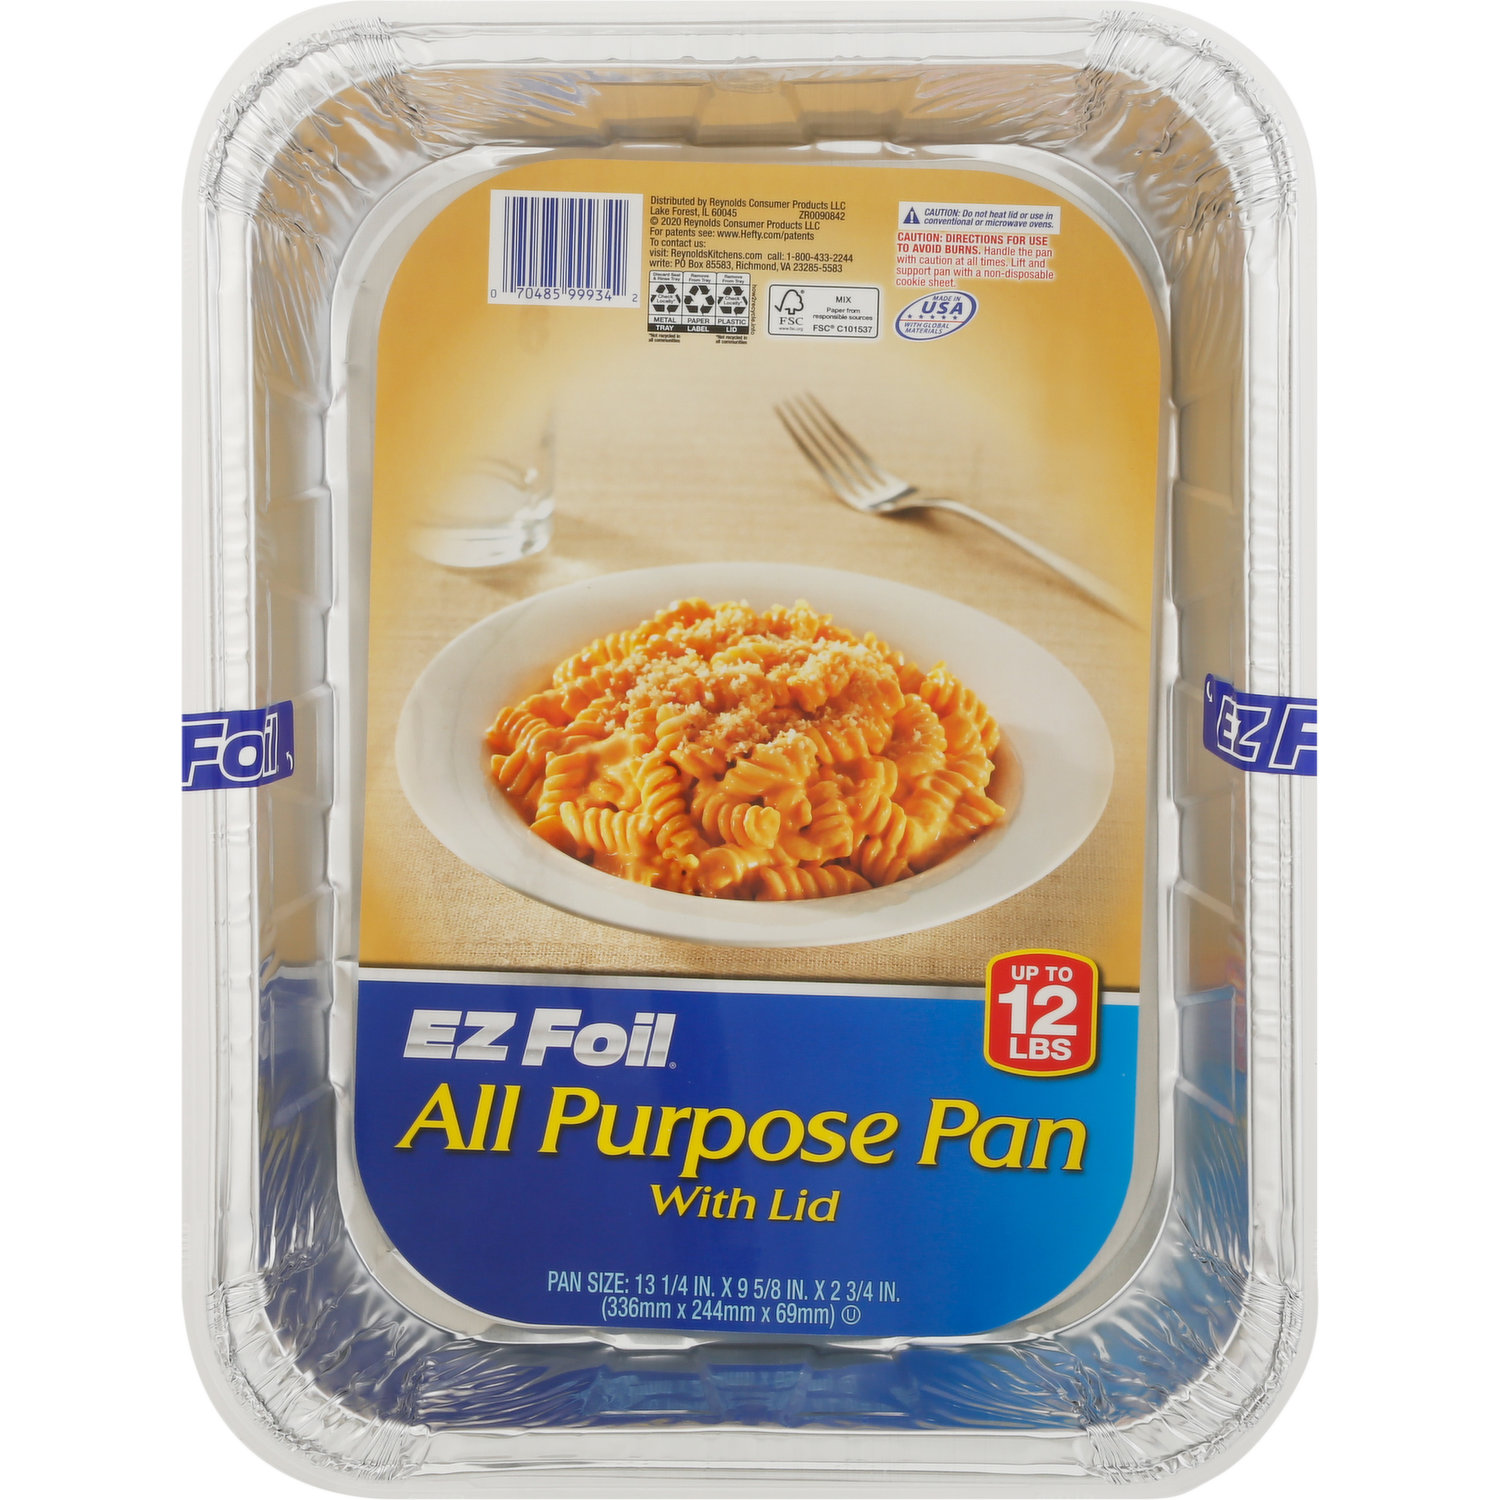 EZ Foil All Purpose Pan, with Lids